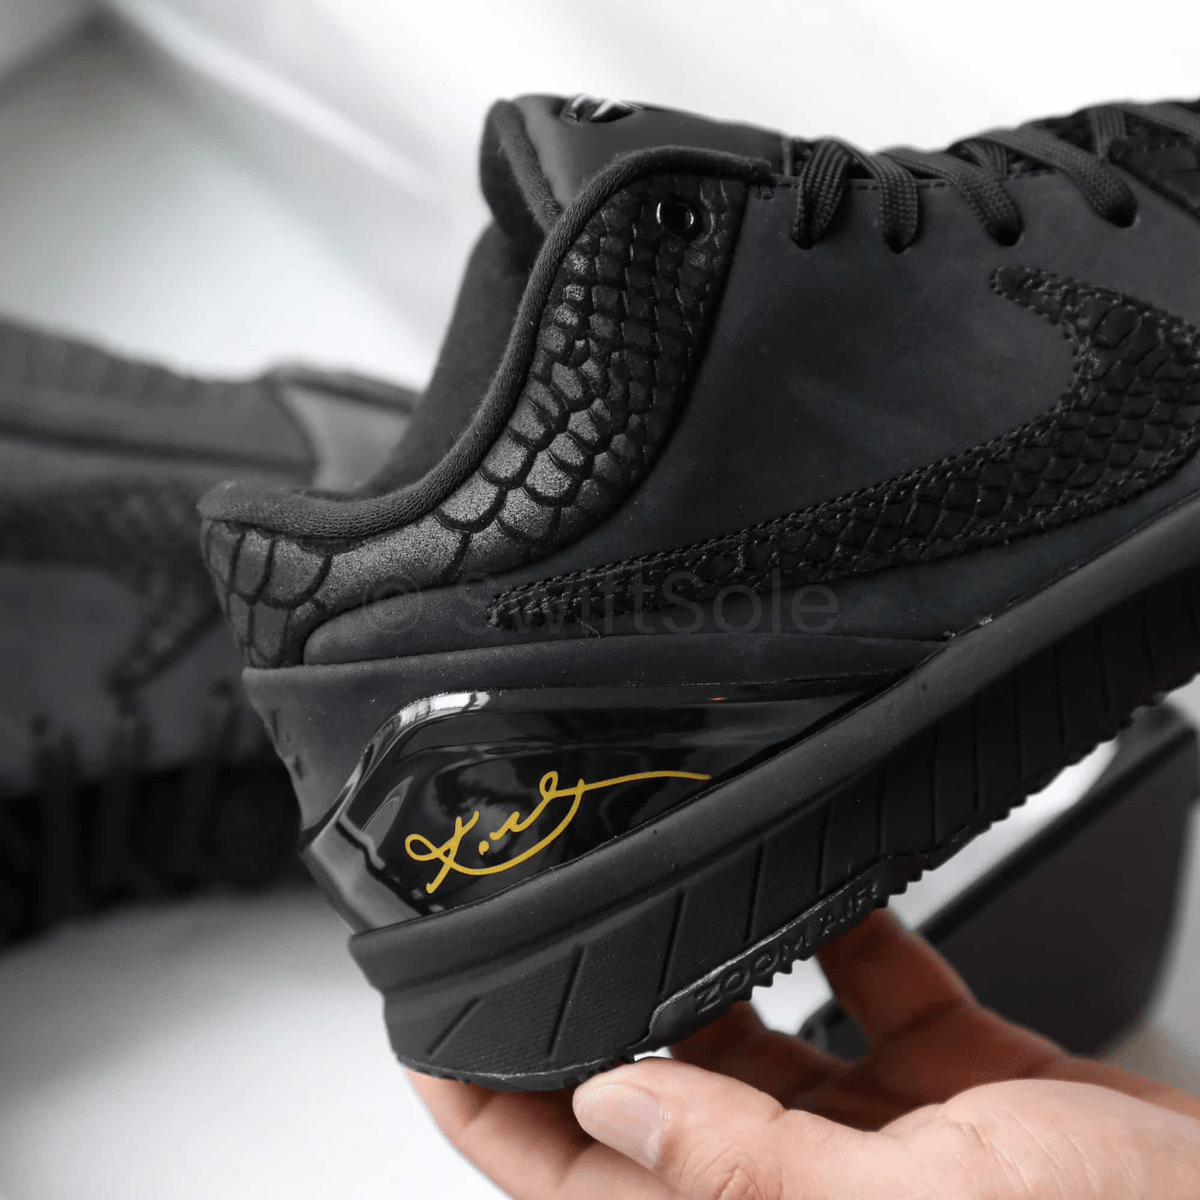 The Nike Kobe 4 Protro Black Mamba Returns 2023 In Black and Gold